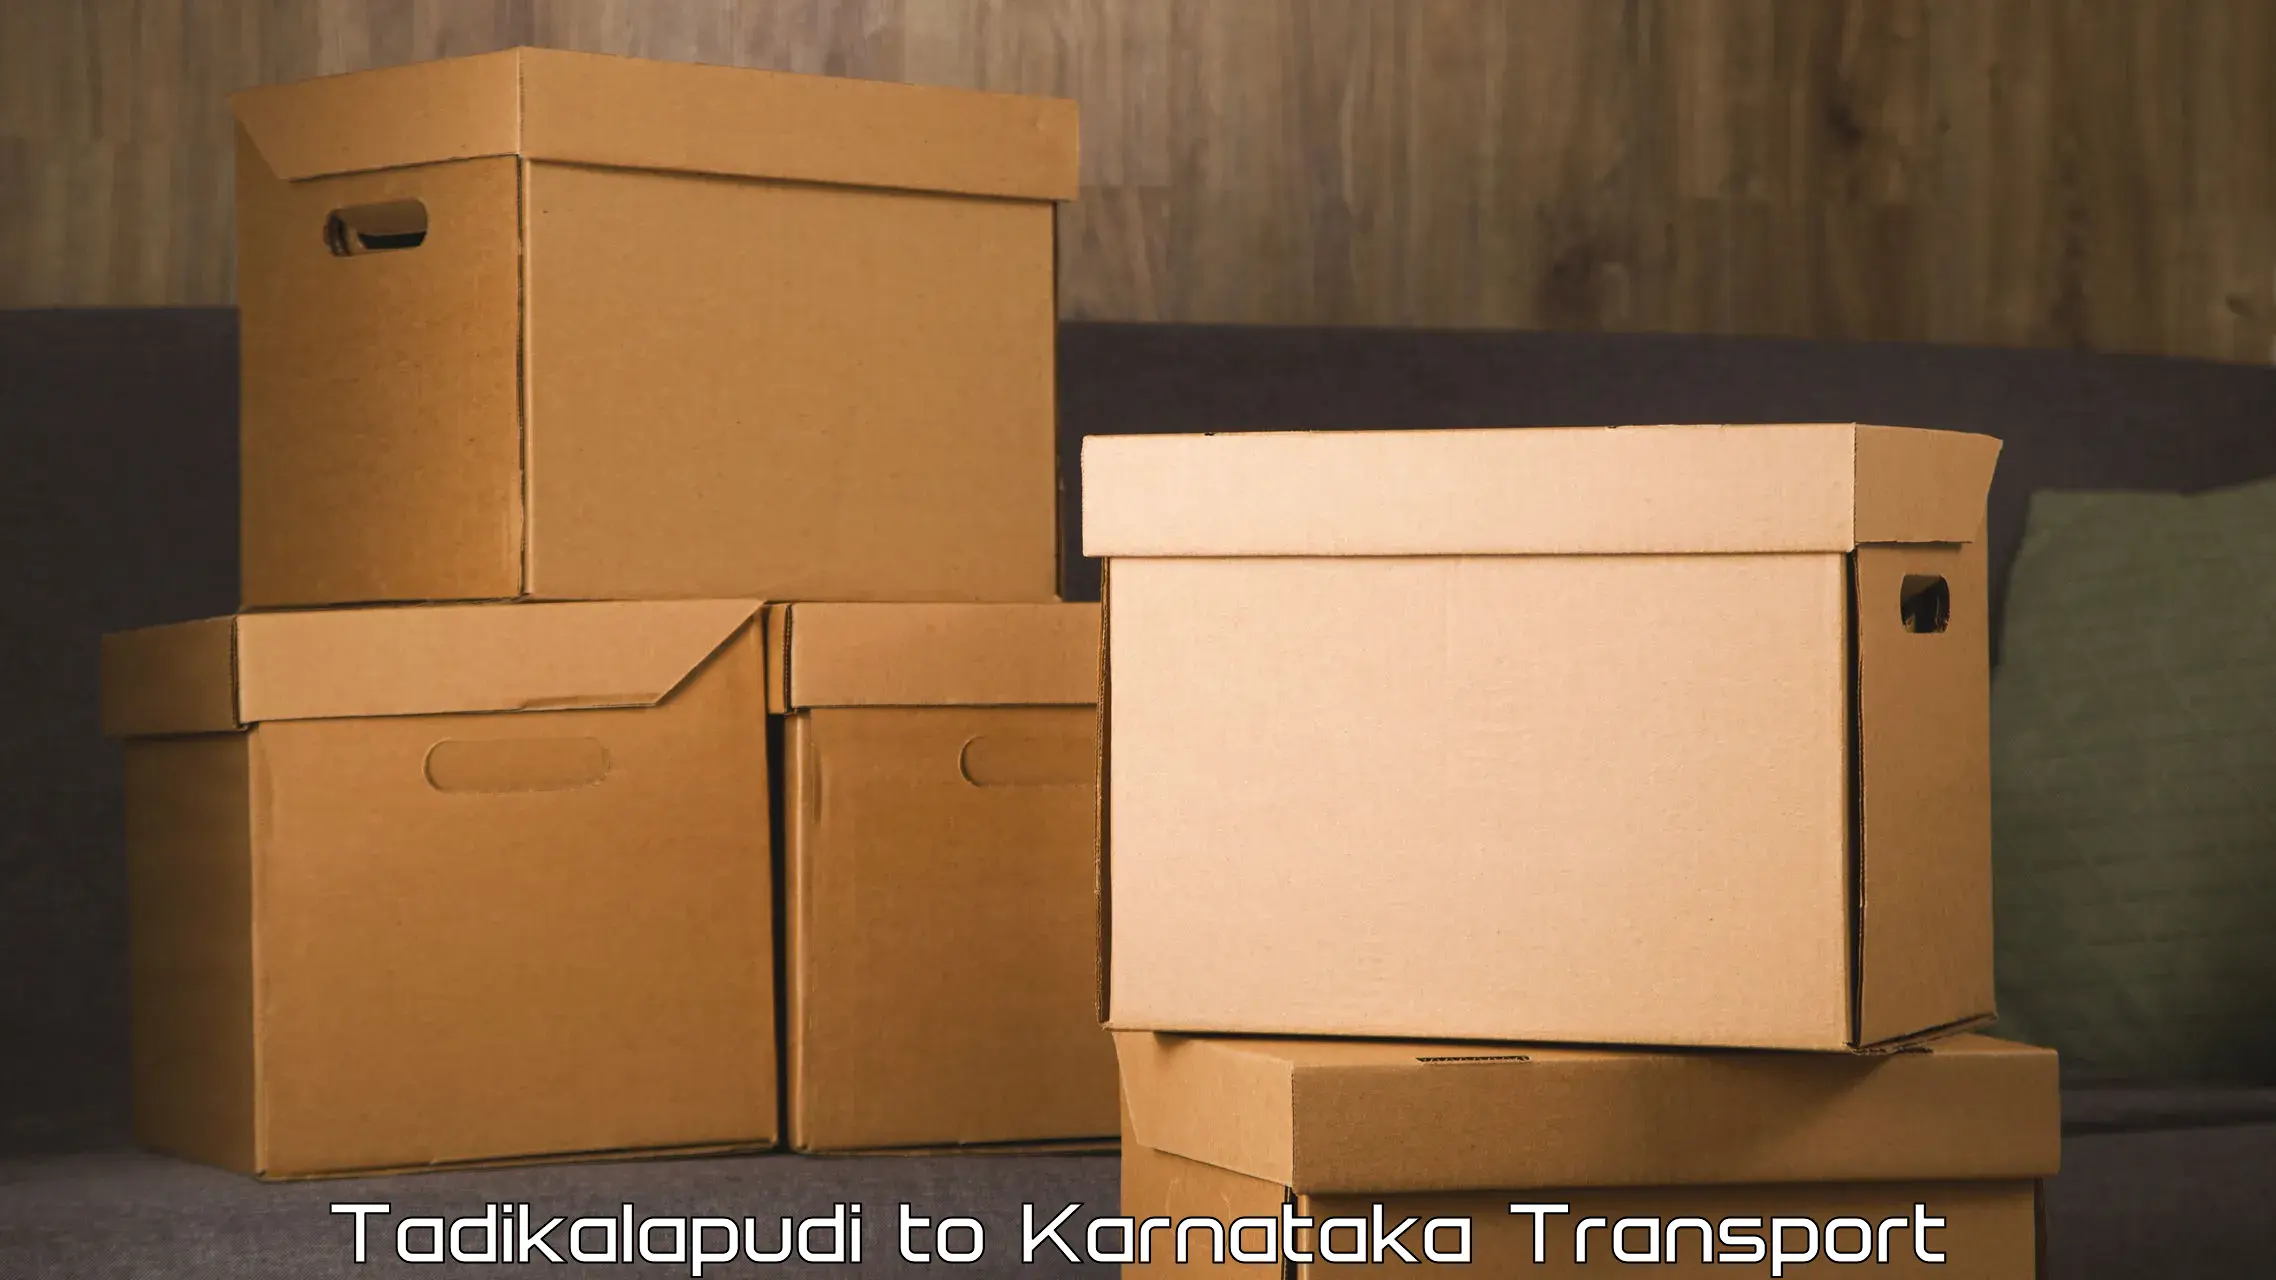 Shipping services Tadikalapudi to Bangalore